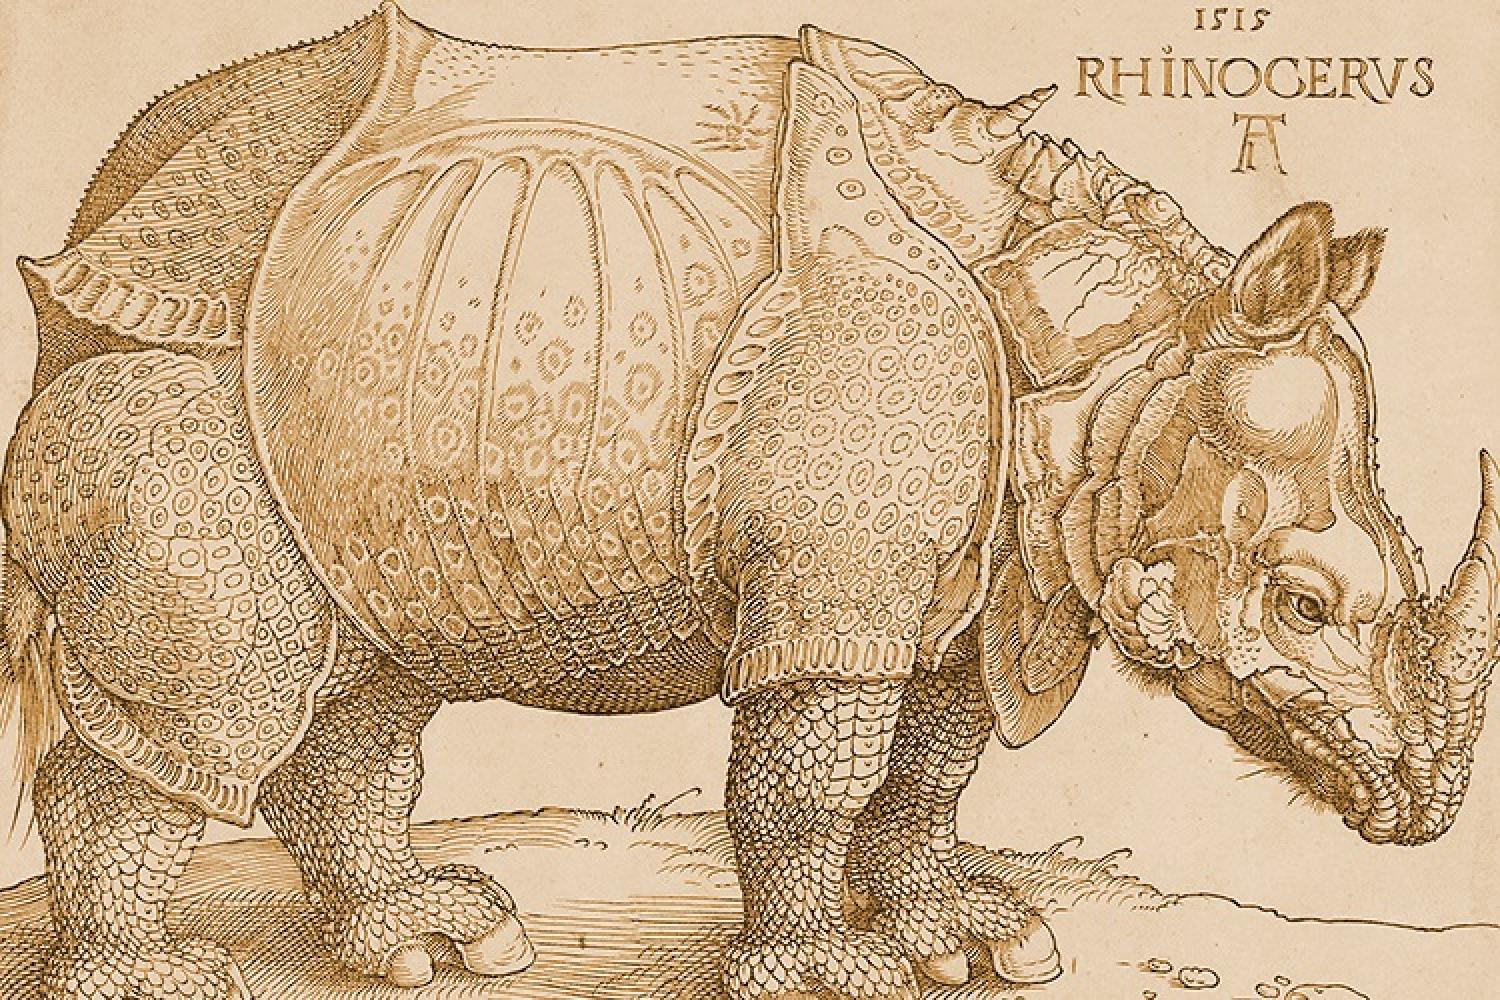 durer-rhinoceros.jpg